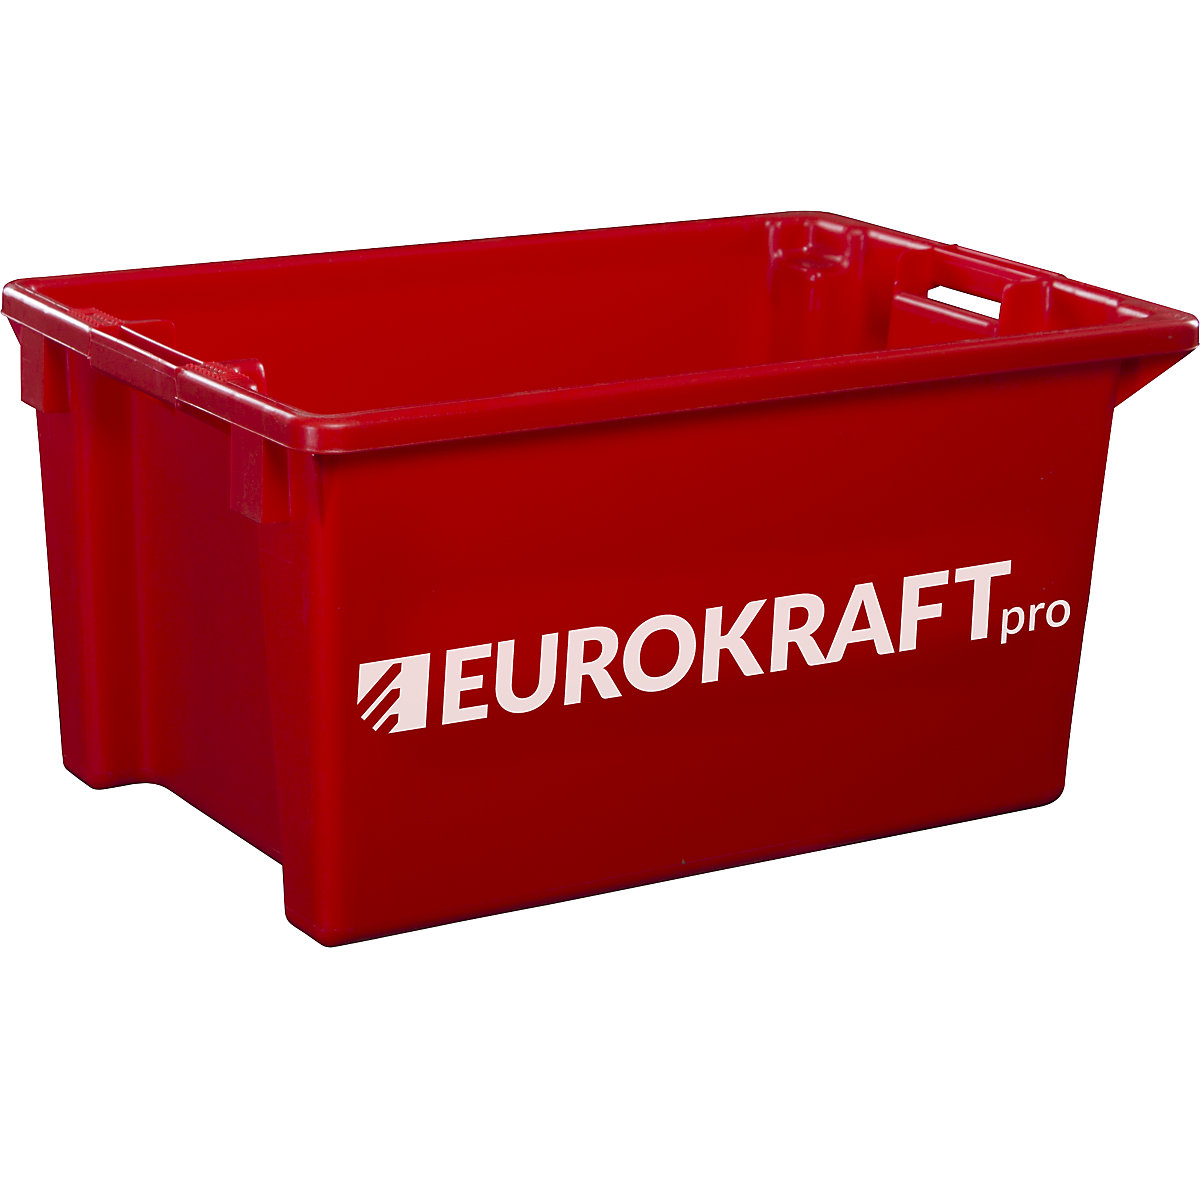 EUROKRAFTpro – Spremnik za slaganje od polipropilena pogodnog za kontakt s prehrambenim proizvodima, volumen 70 l, pak. 2 kom., zatvorene stijenke i dno, u crvenoj boji